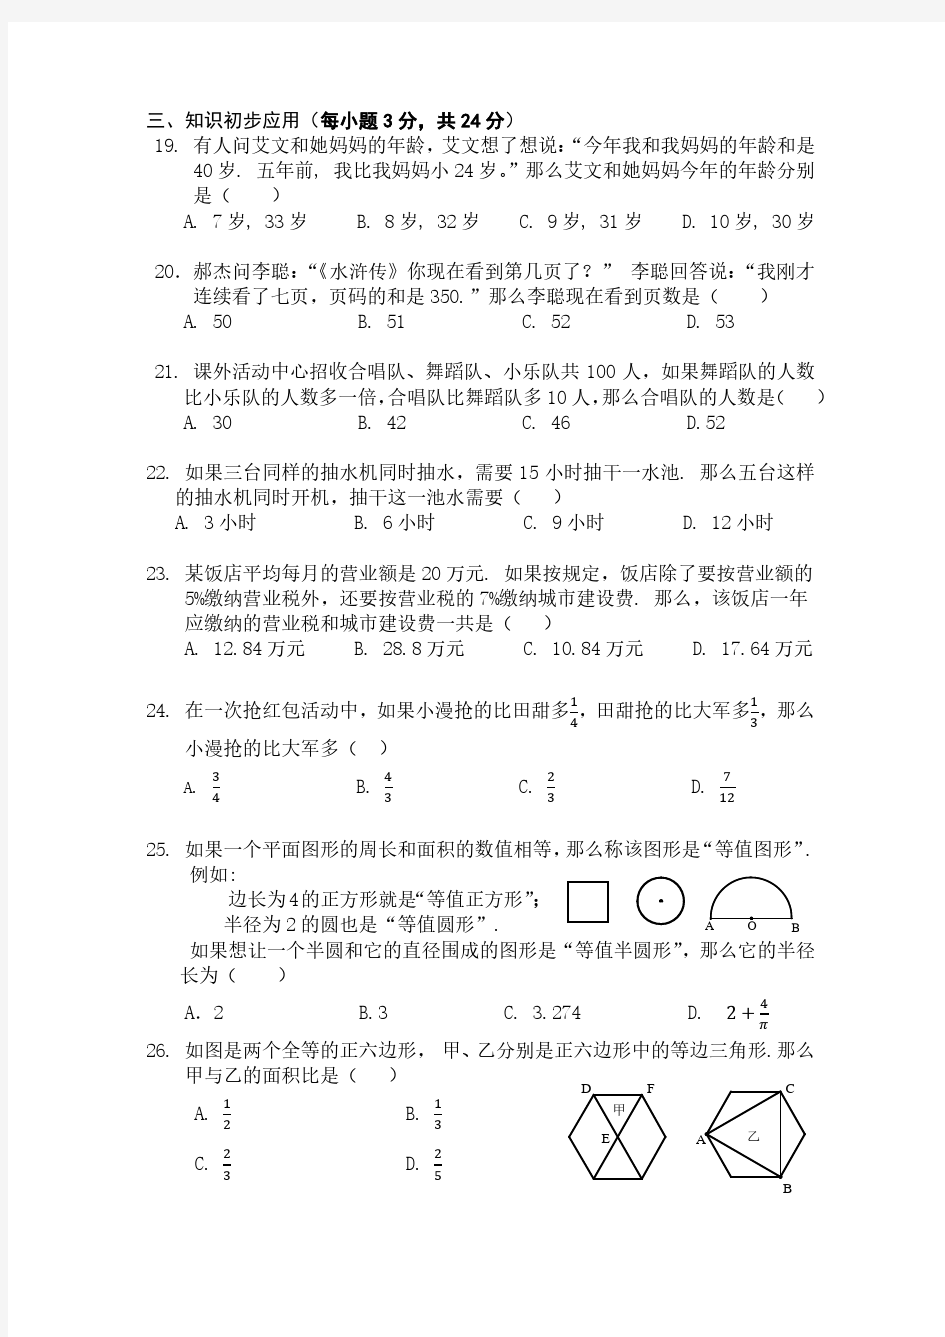 北京四中新初一分班考试数学试题